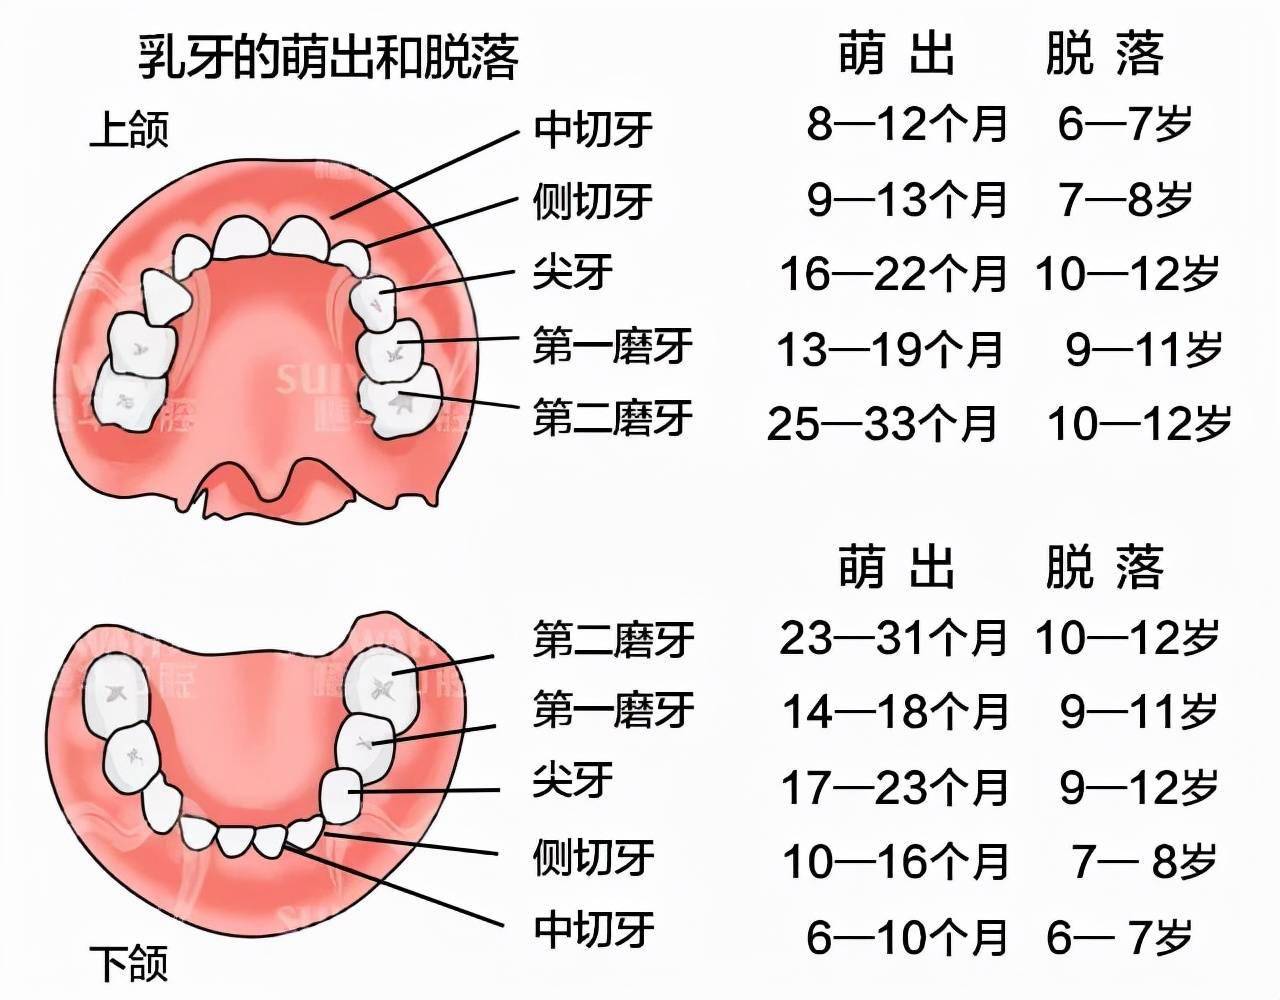 乳牙换牙周期,可对号入座 二,乳牙龋坏的严重性  1,乳牙龋坏,恒牙也